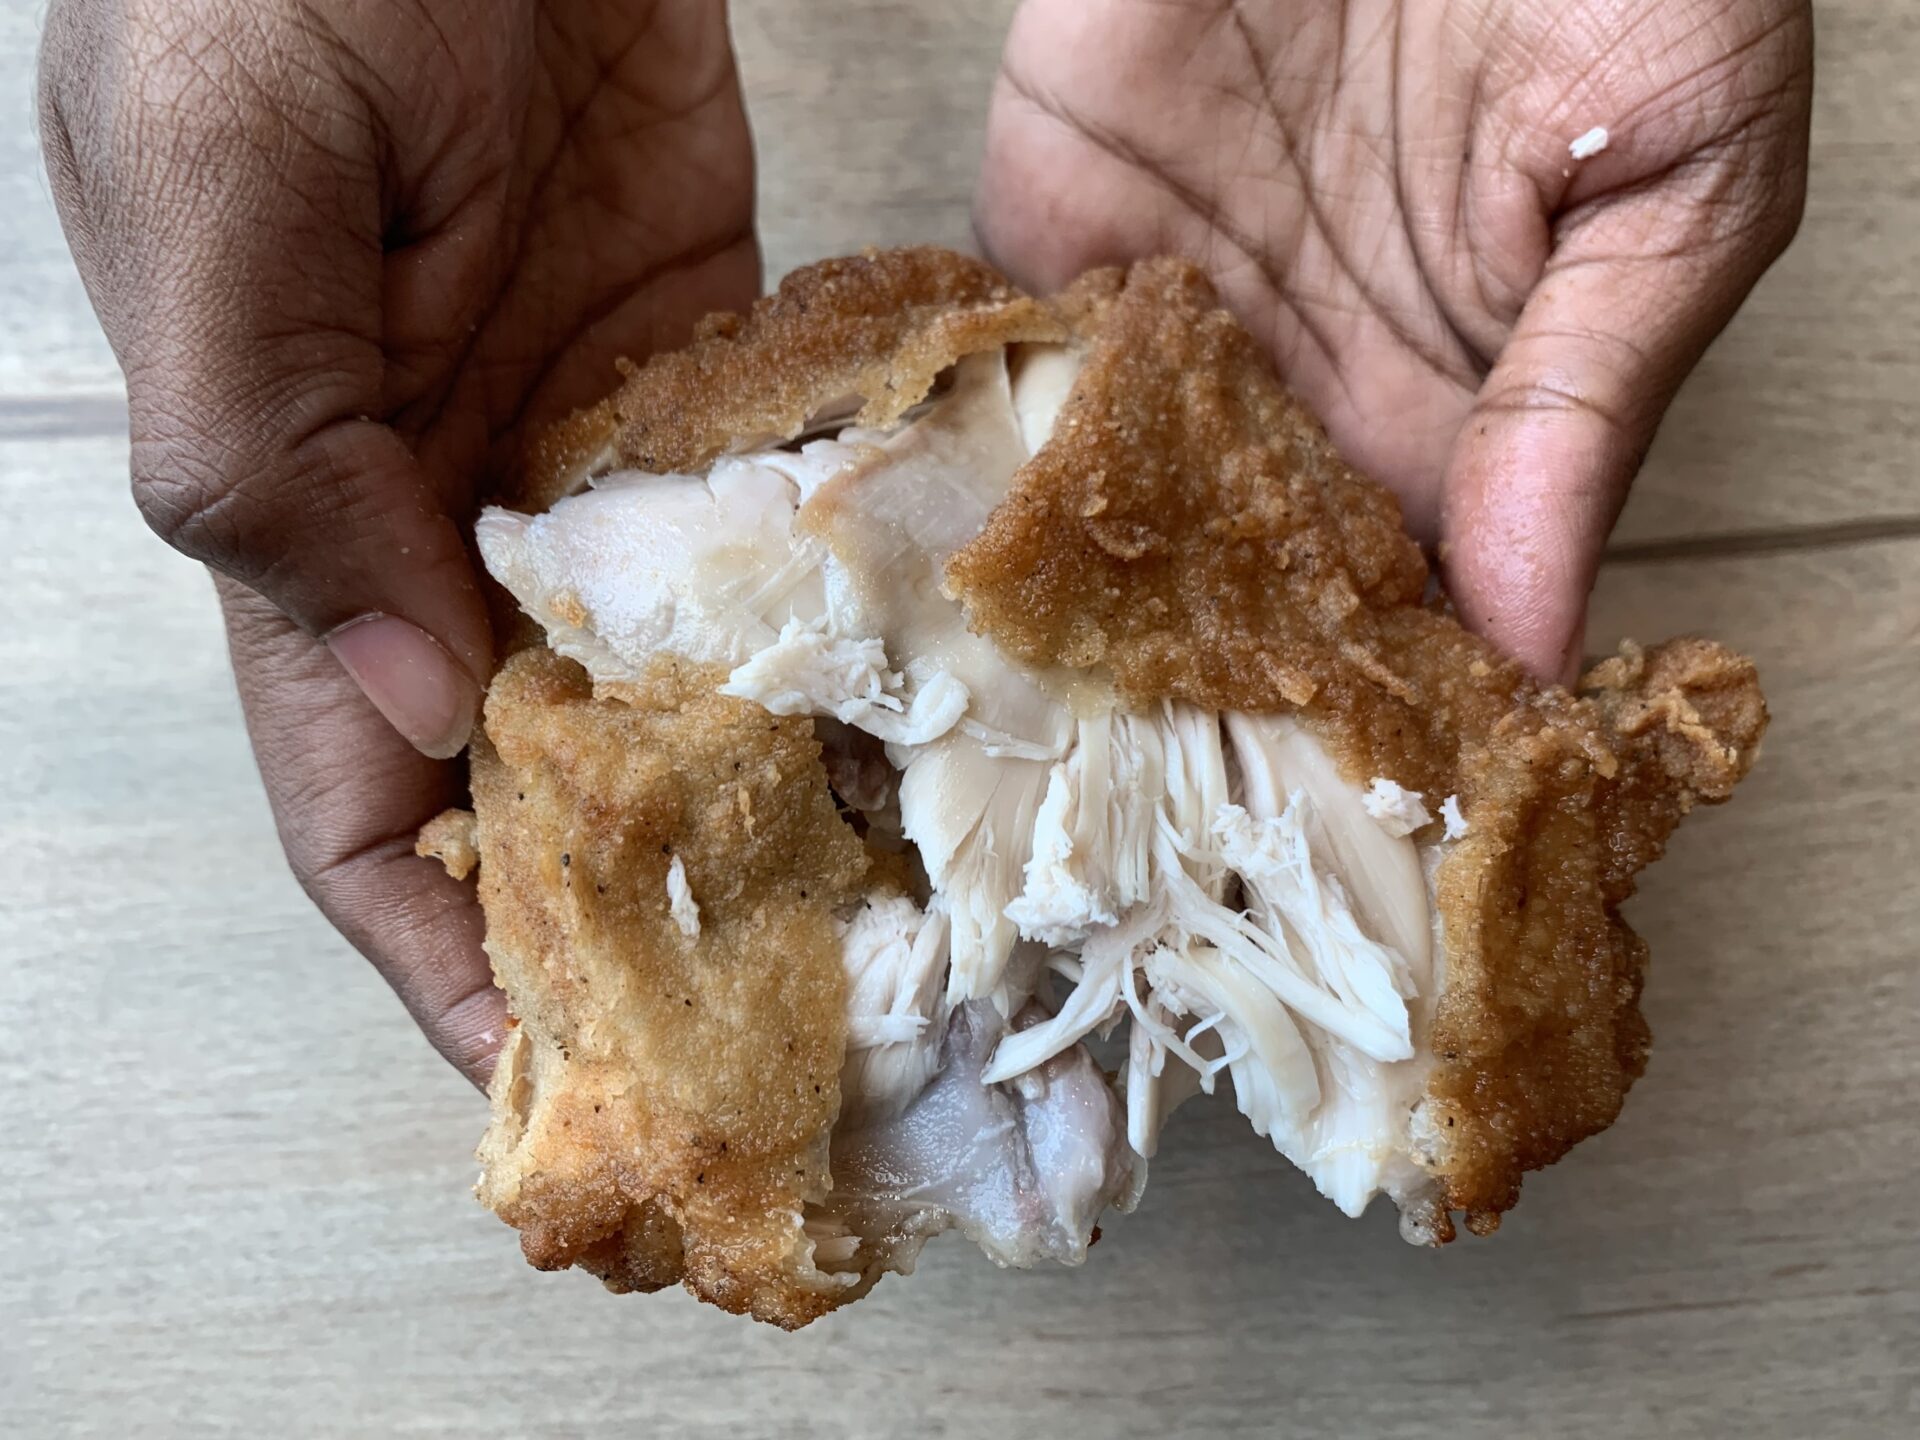 KFC - Piece of chicken